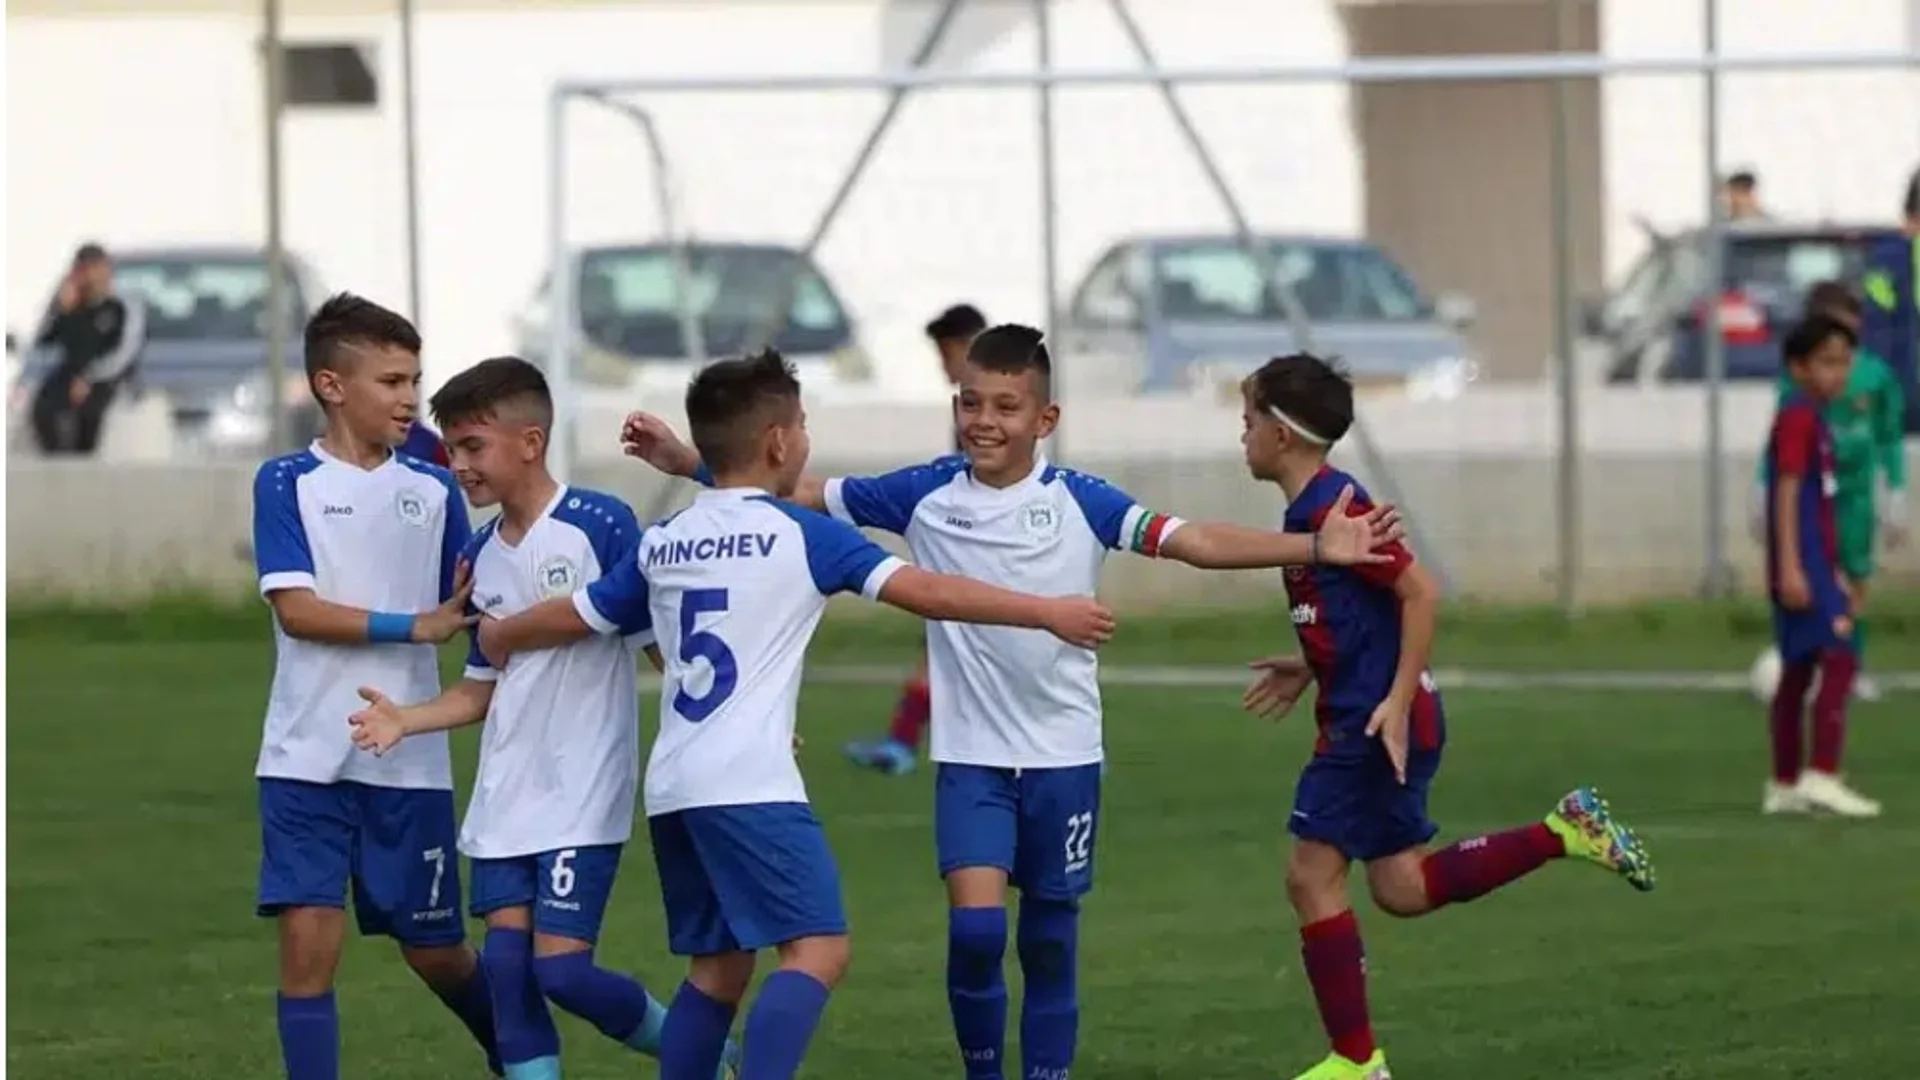 Гордост! Български детски отбор срази два пъти Барселона (СНИМКИ)